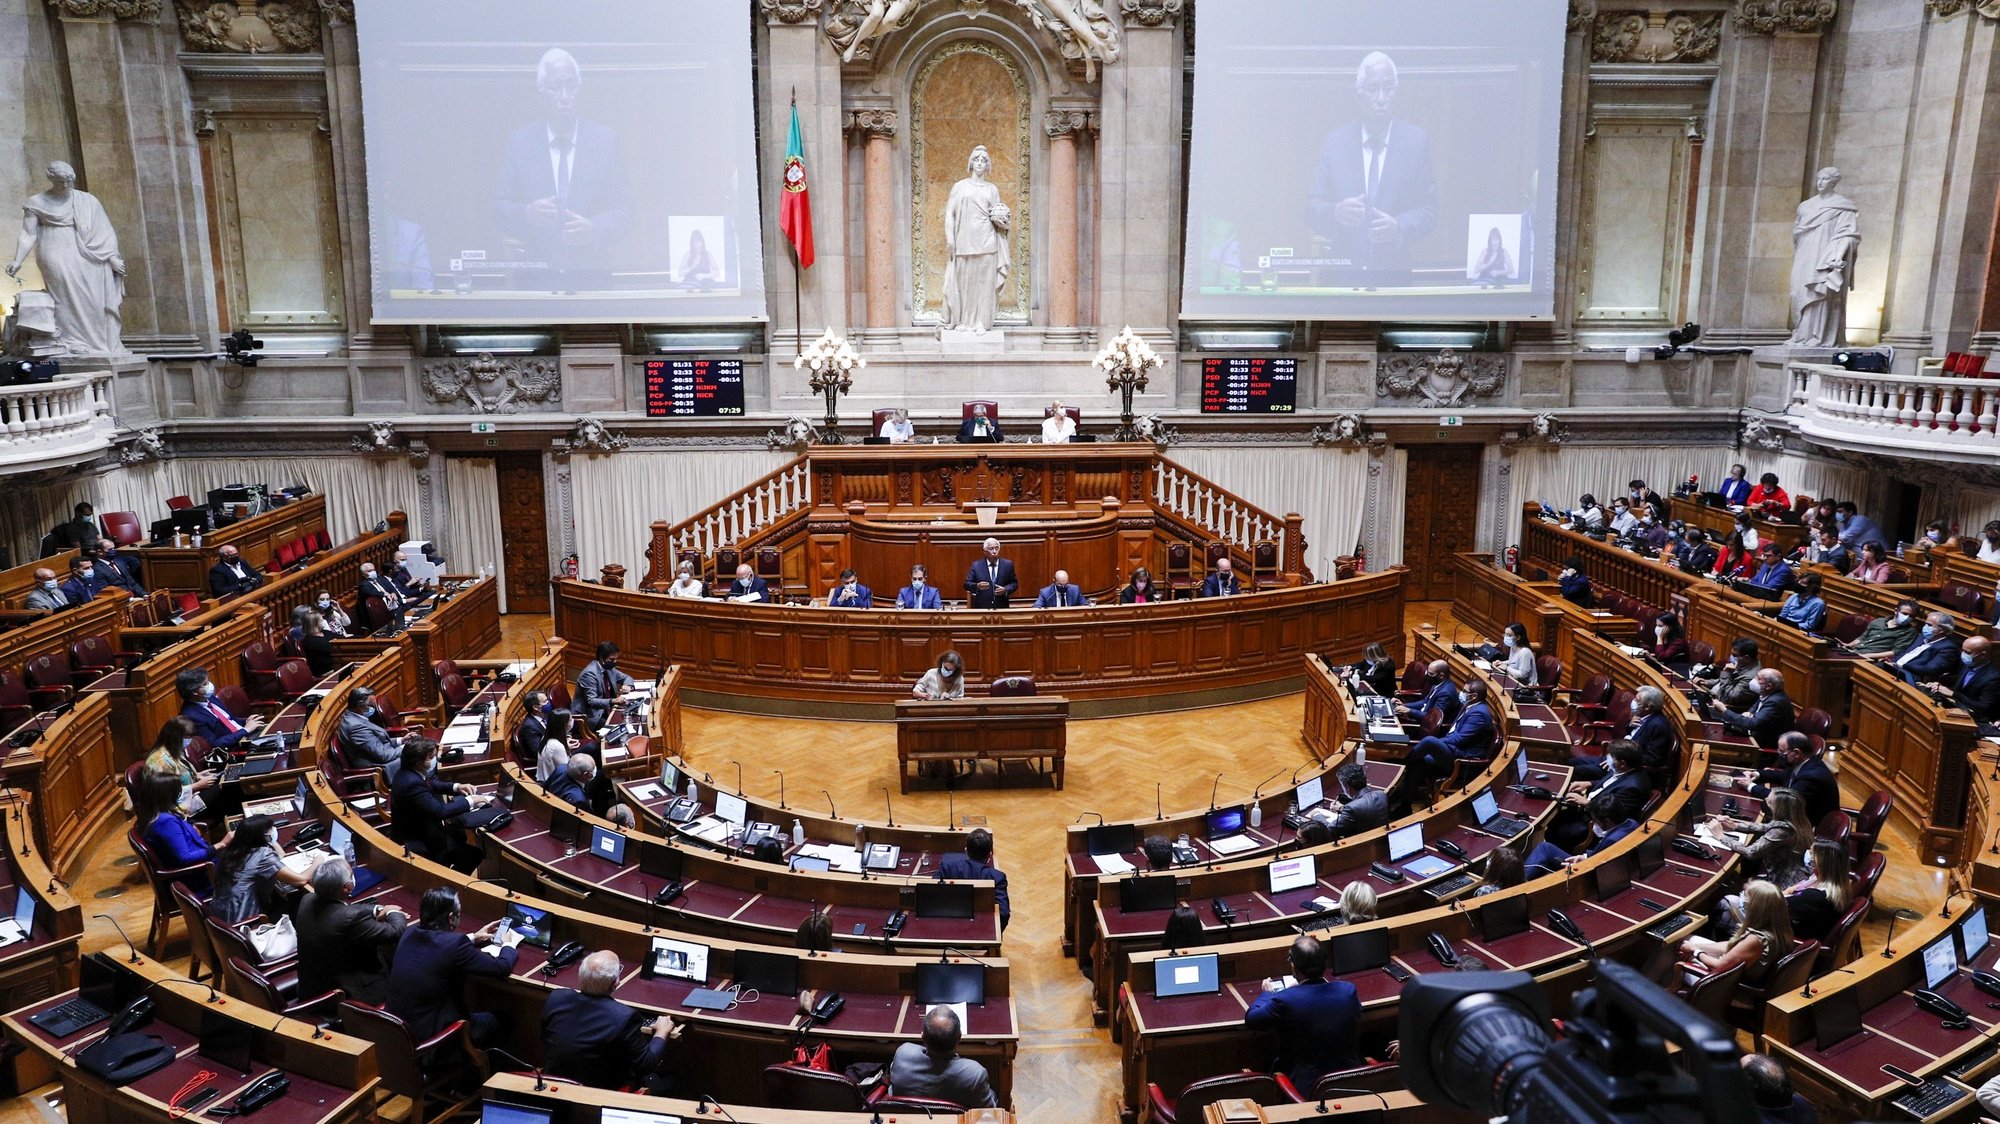 O primeiro-ministro, António Costa (C), intervém durante o debate sobre política geral, na Assembleia da República, em Lisboa, 07 de outubro de 2021. ANTÓNIO COTRIM/LUSA